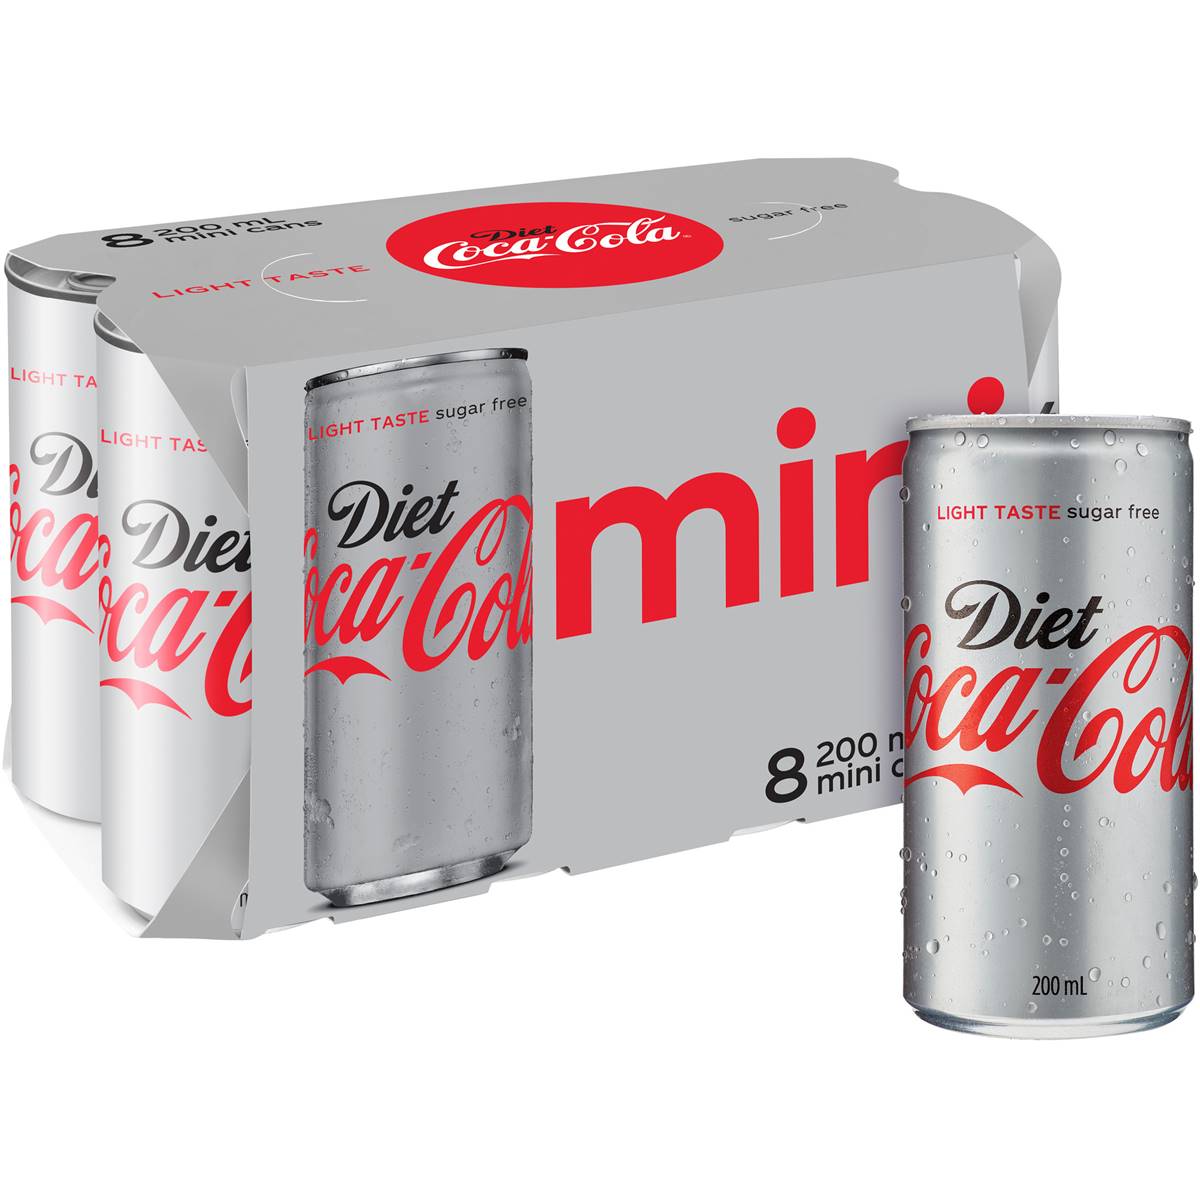 Calories in Coca-cola Diet Mini Cans calcount